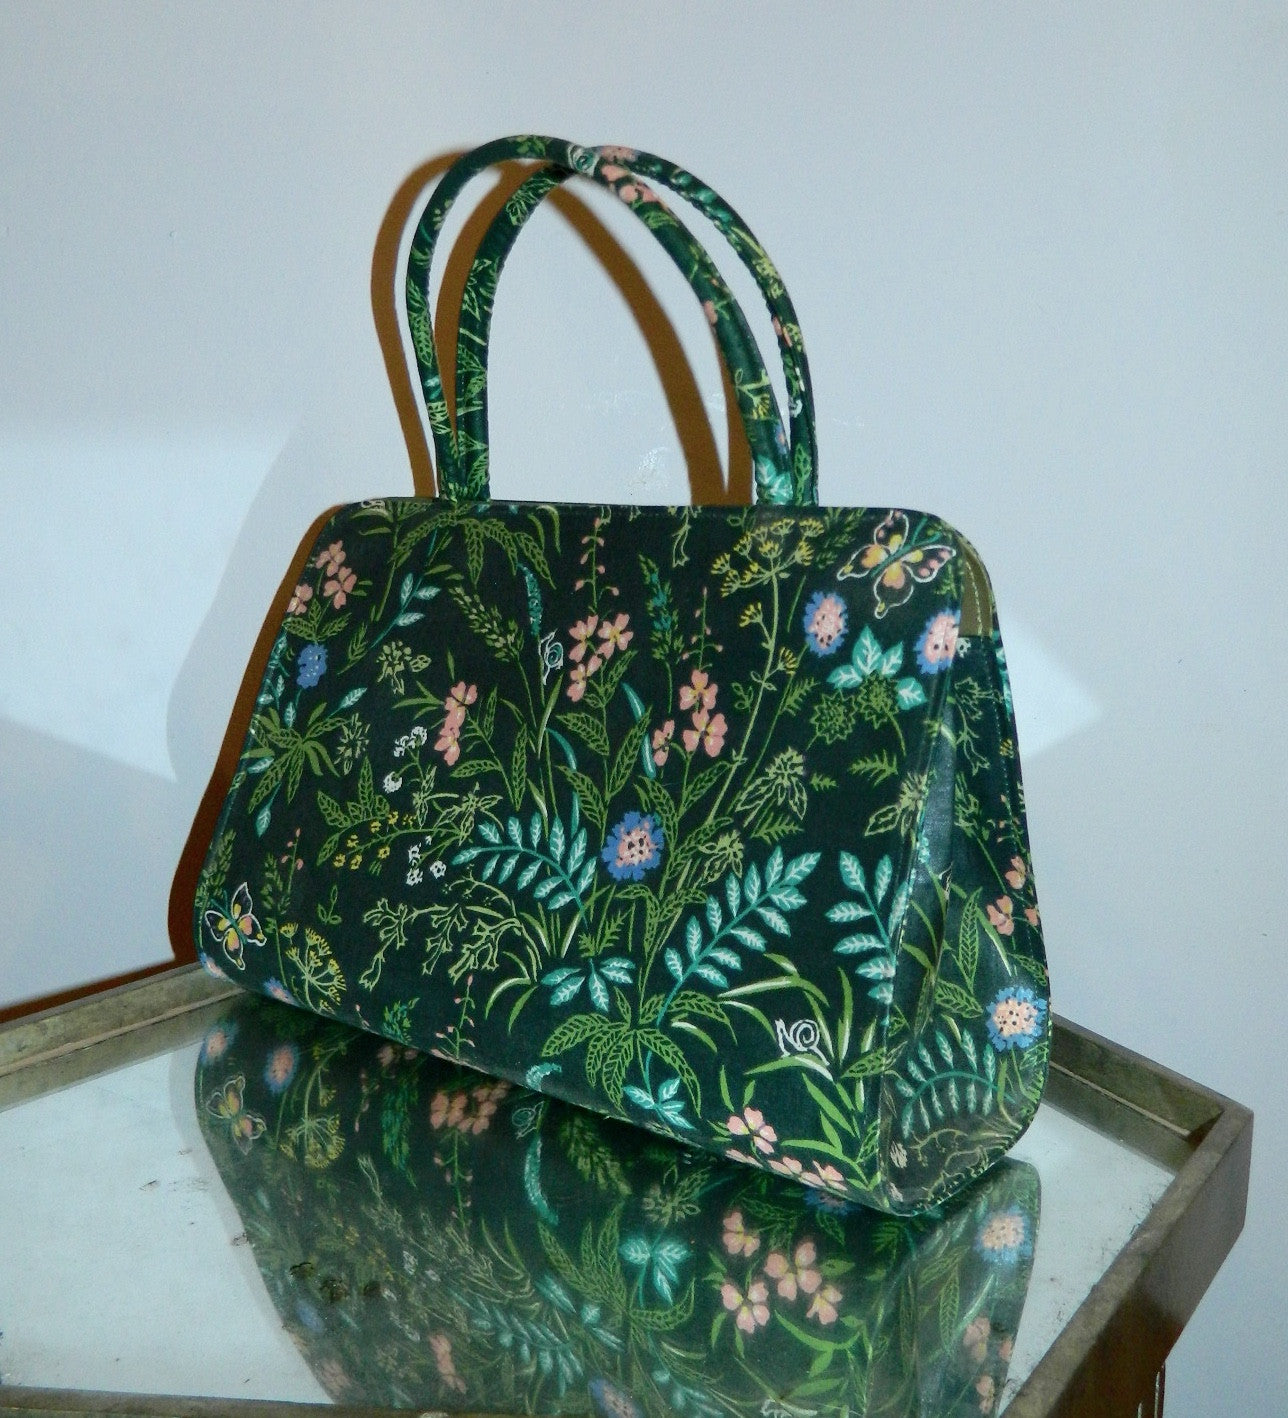 vintage 1960s handbag Margaret Smith floral purse ferns snails